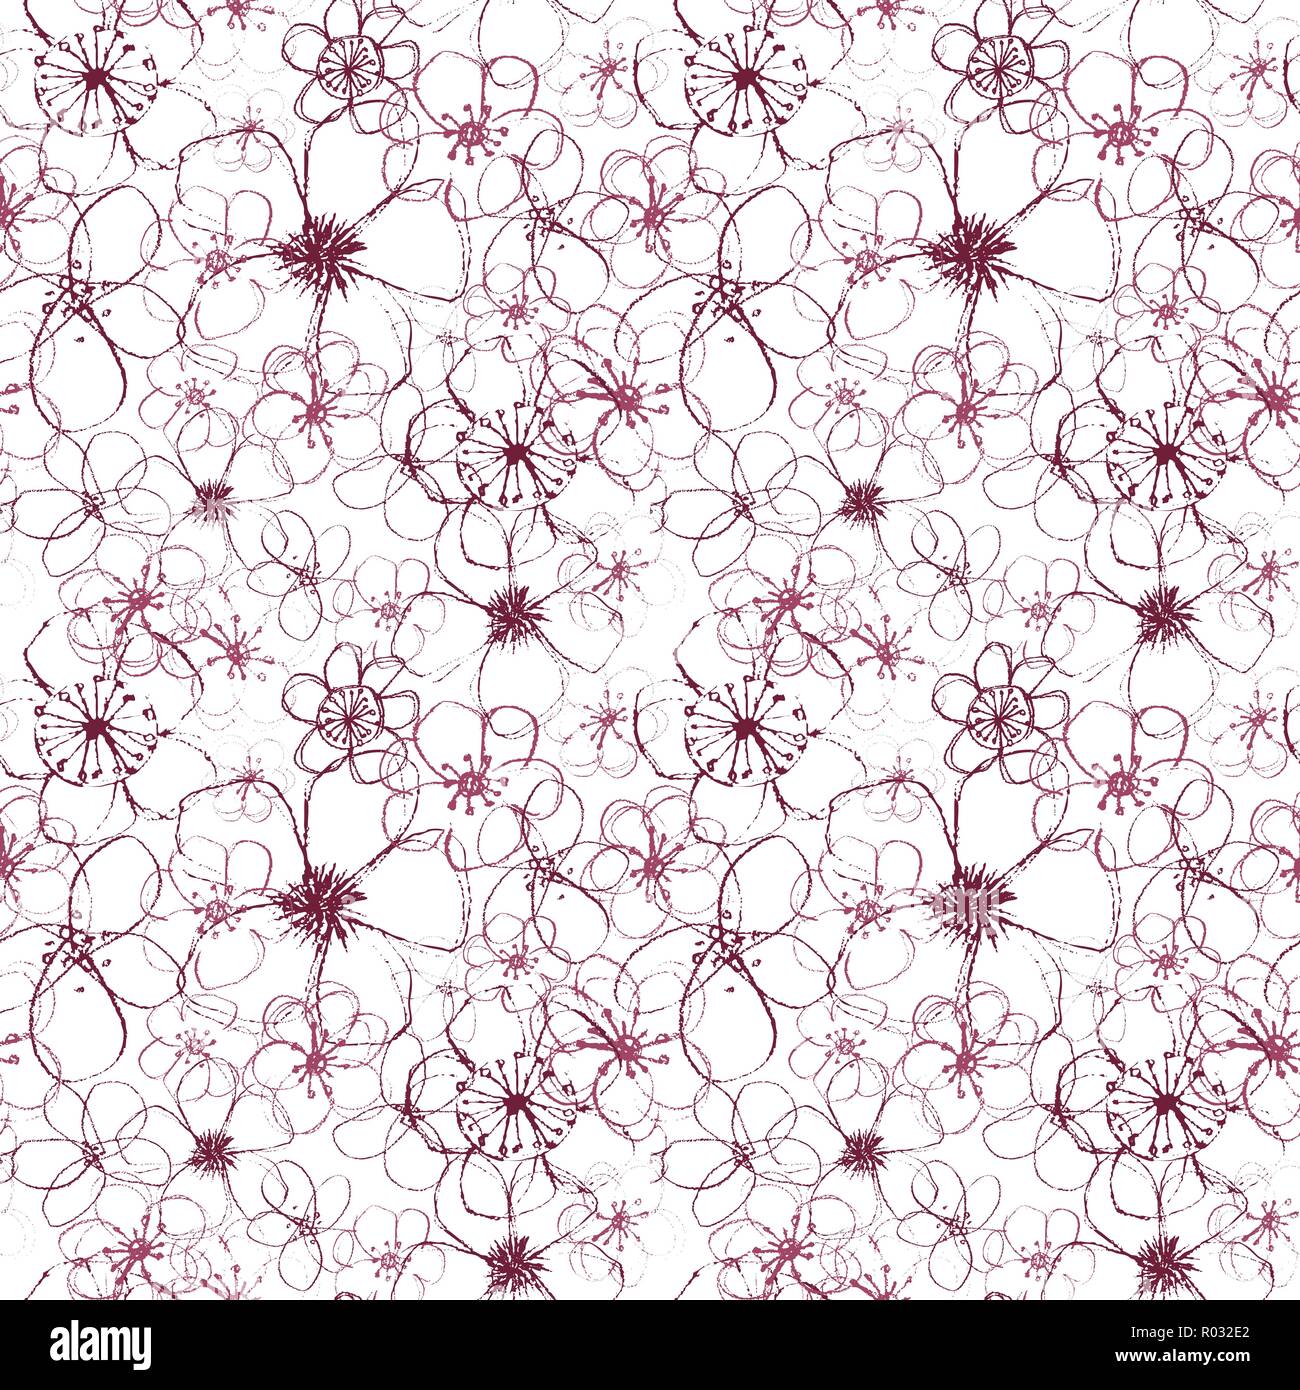 Magenta vectorielles sophistiquées transparente floral pattern sur fond blanc. Estival, festif et amusant. Illustration de Vecteur